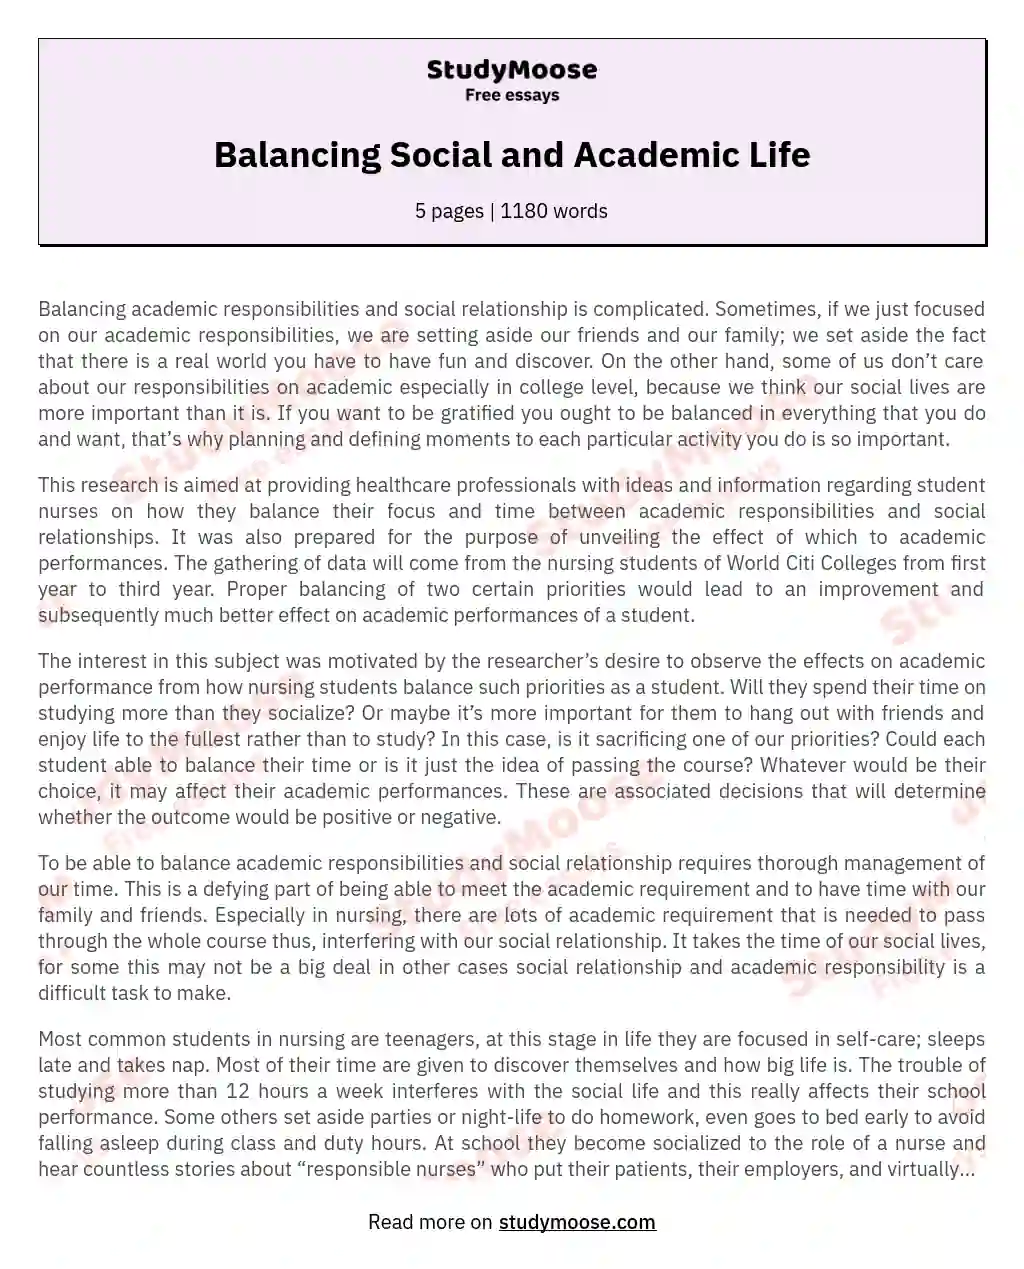 Balancing Social and Academic Life essay